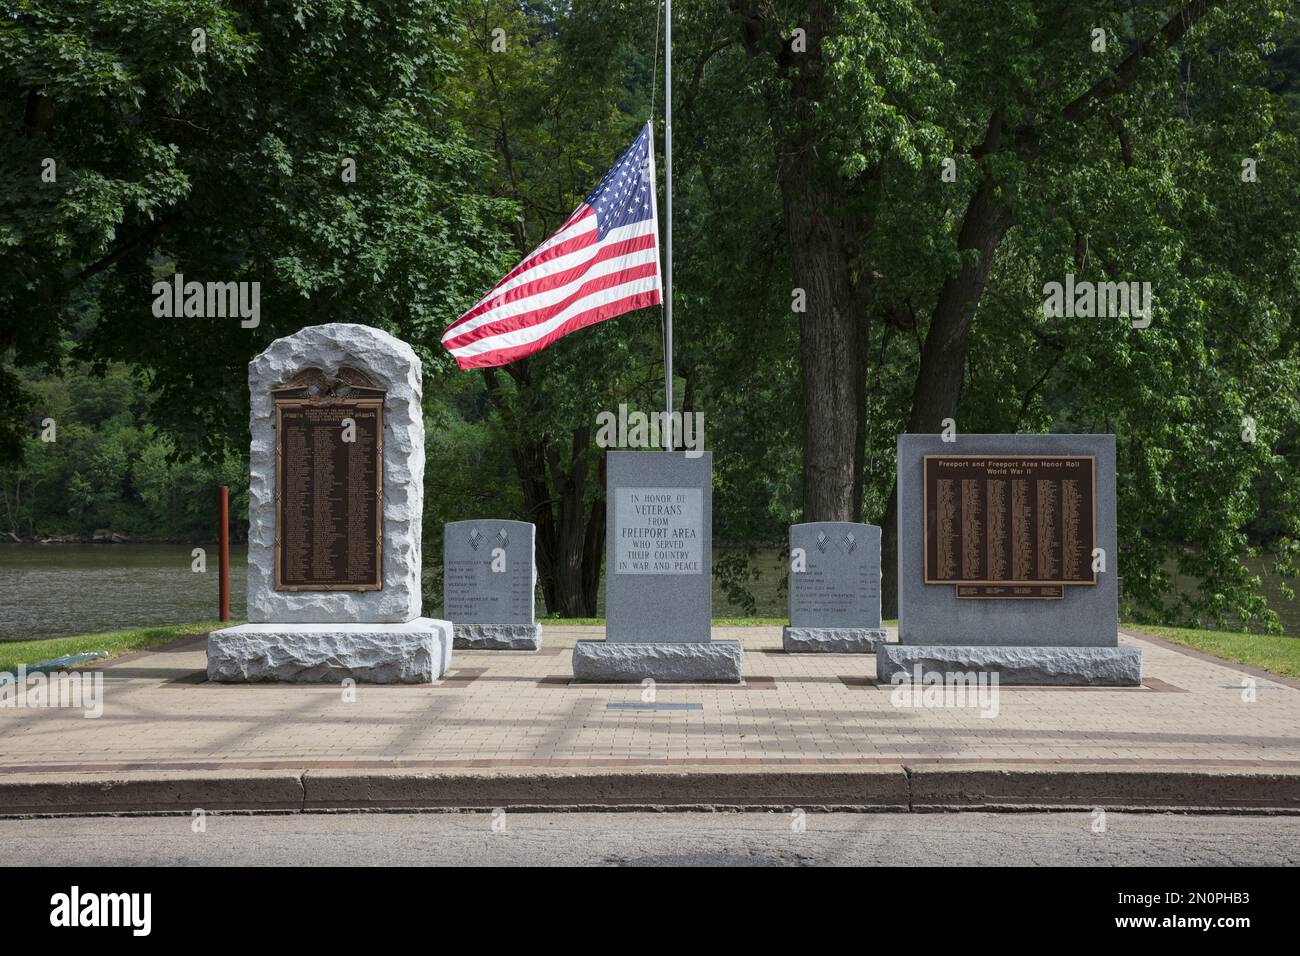 Kriegsdenkmäler, Grabsteine und amerikanische Flagge zu Ehren von US-Kriegsveteranen auf einem Friedhof. Stockfoto